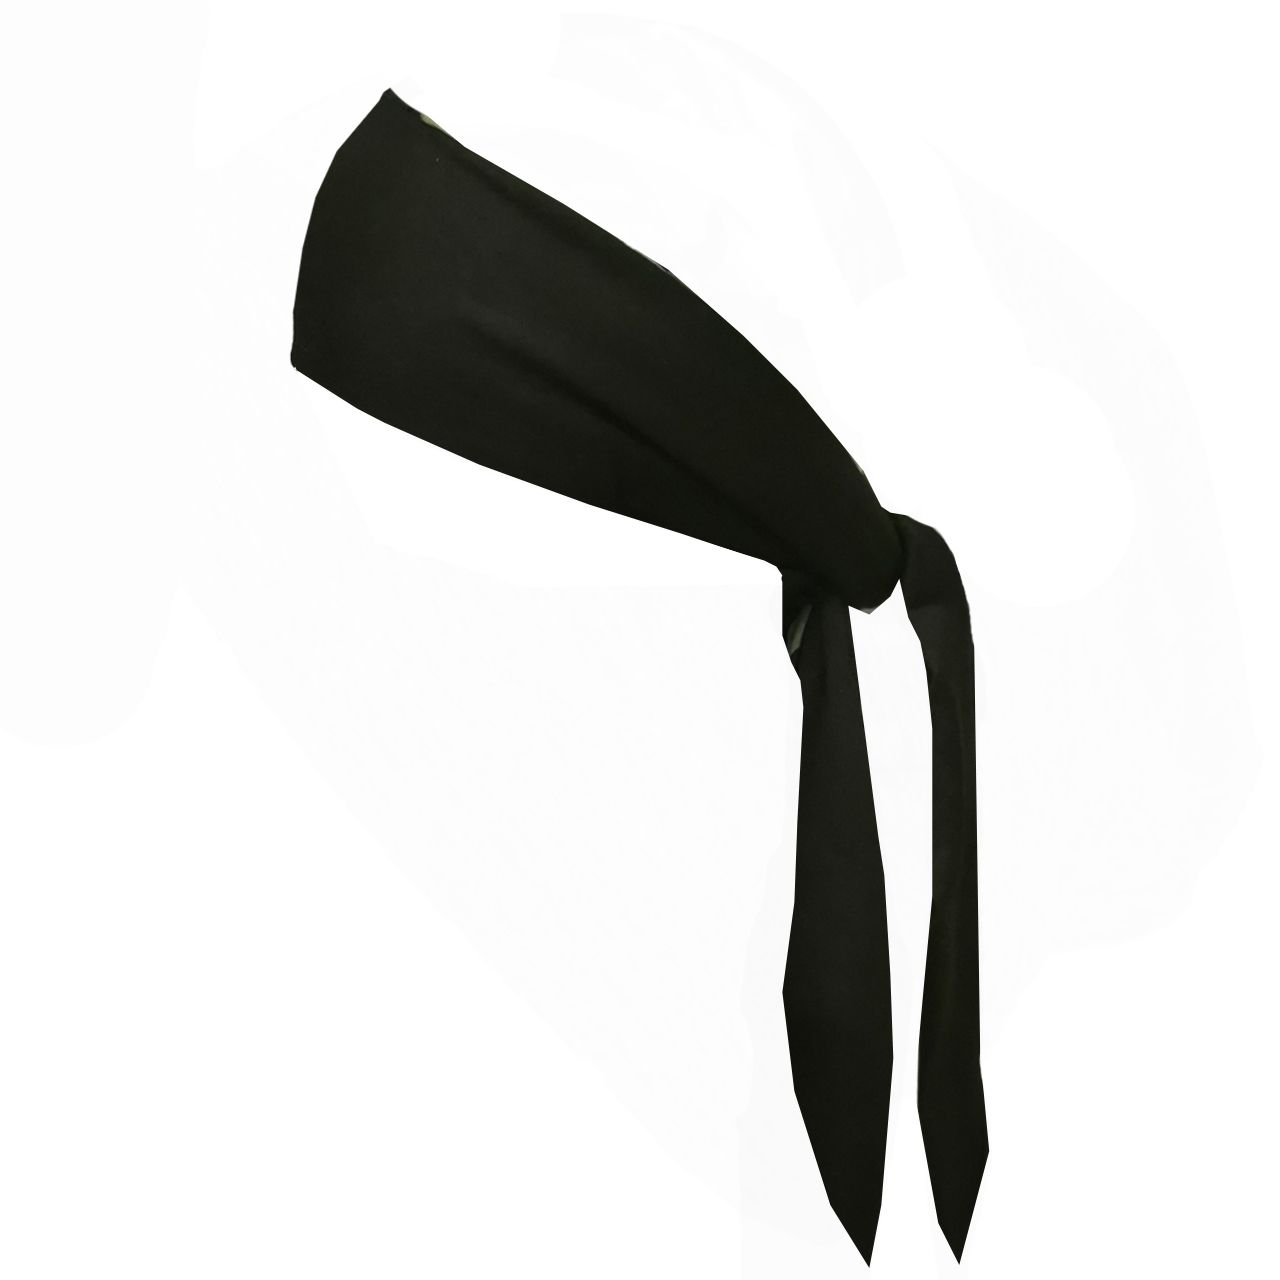 دستمال سر و گردن لیپو مدل XI200 -  - 8